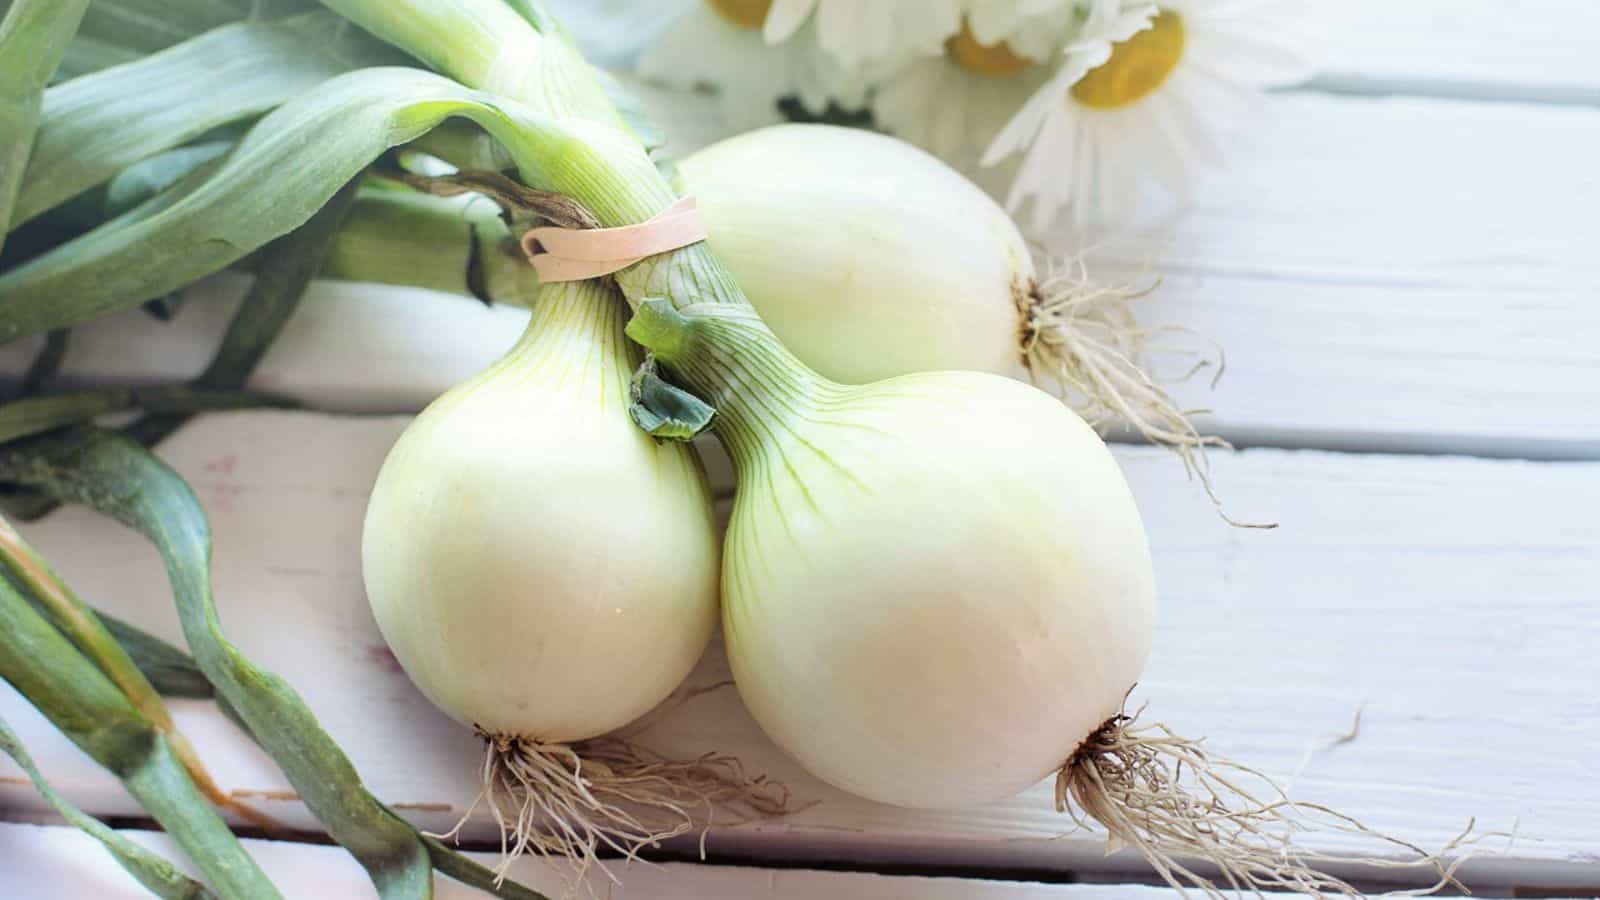 White Onions.